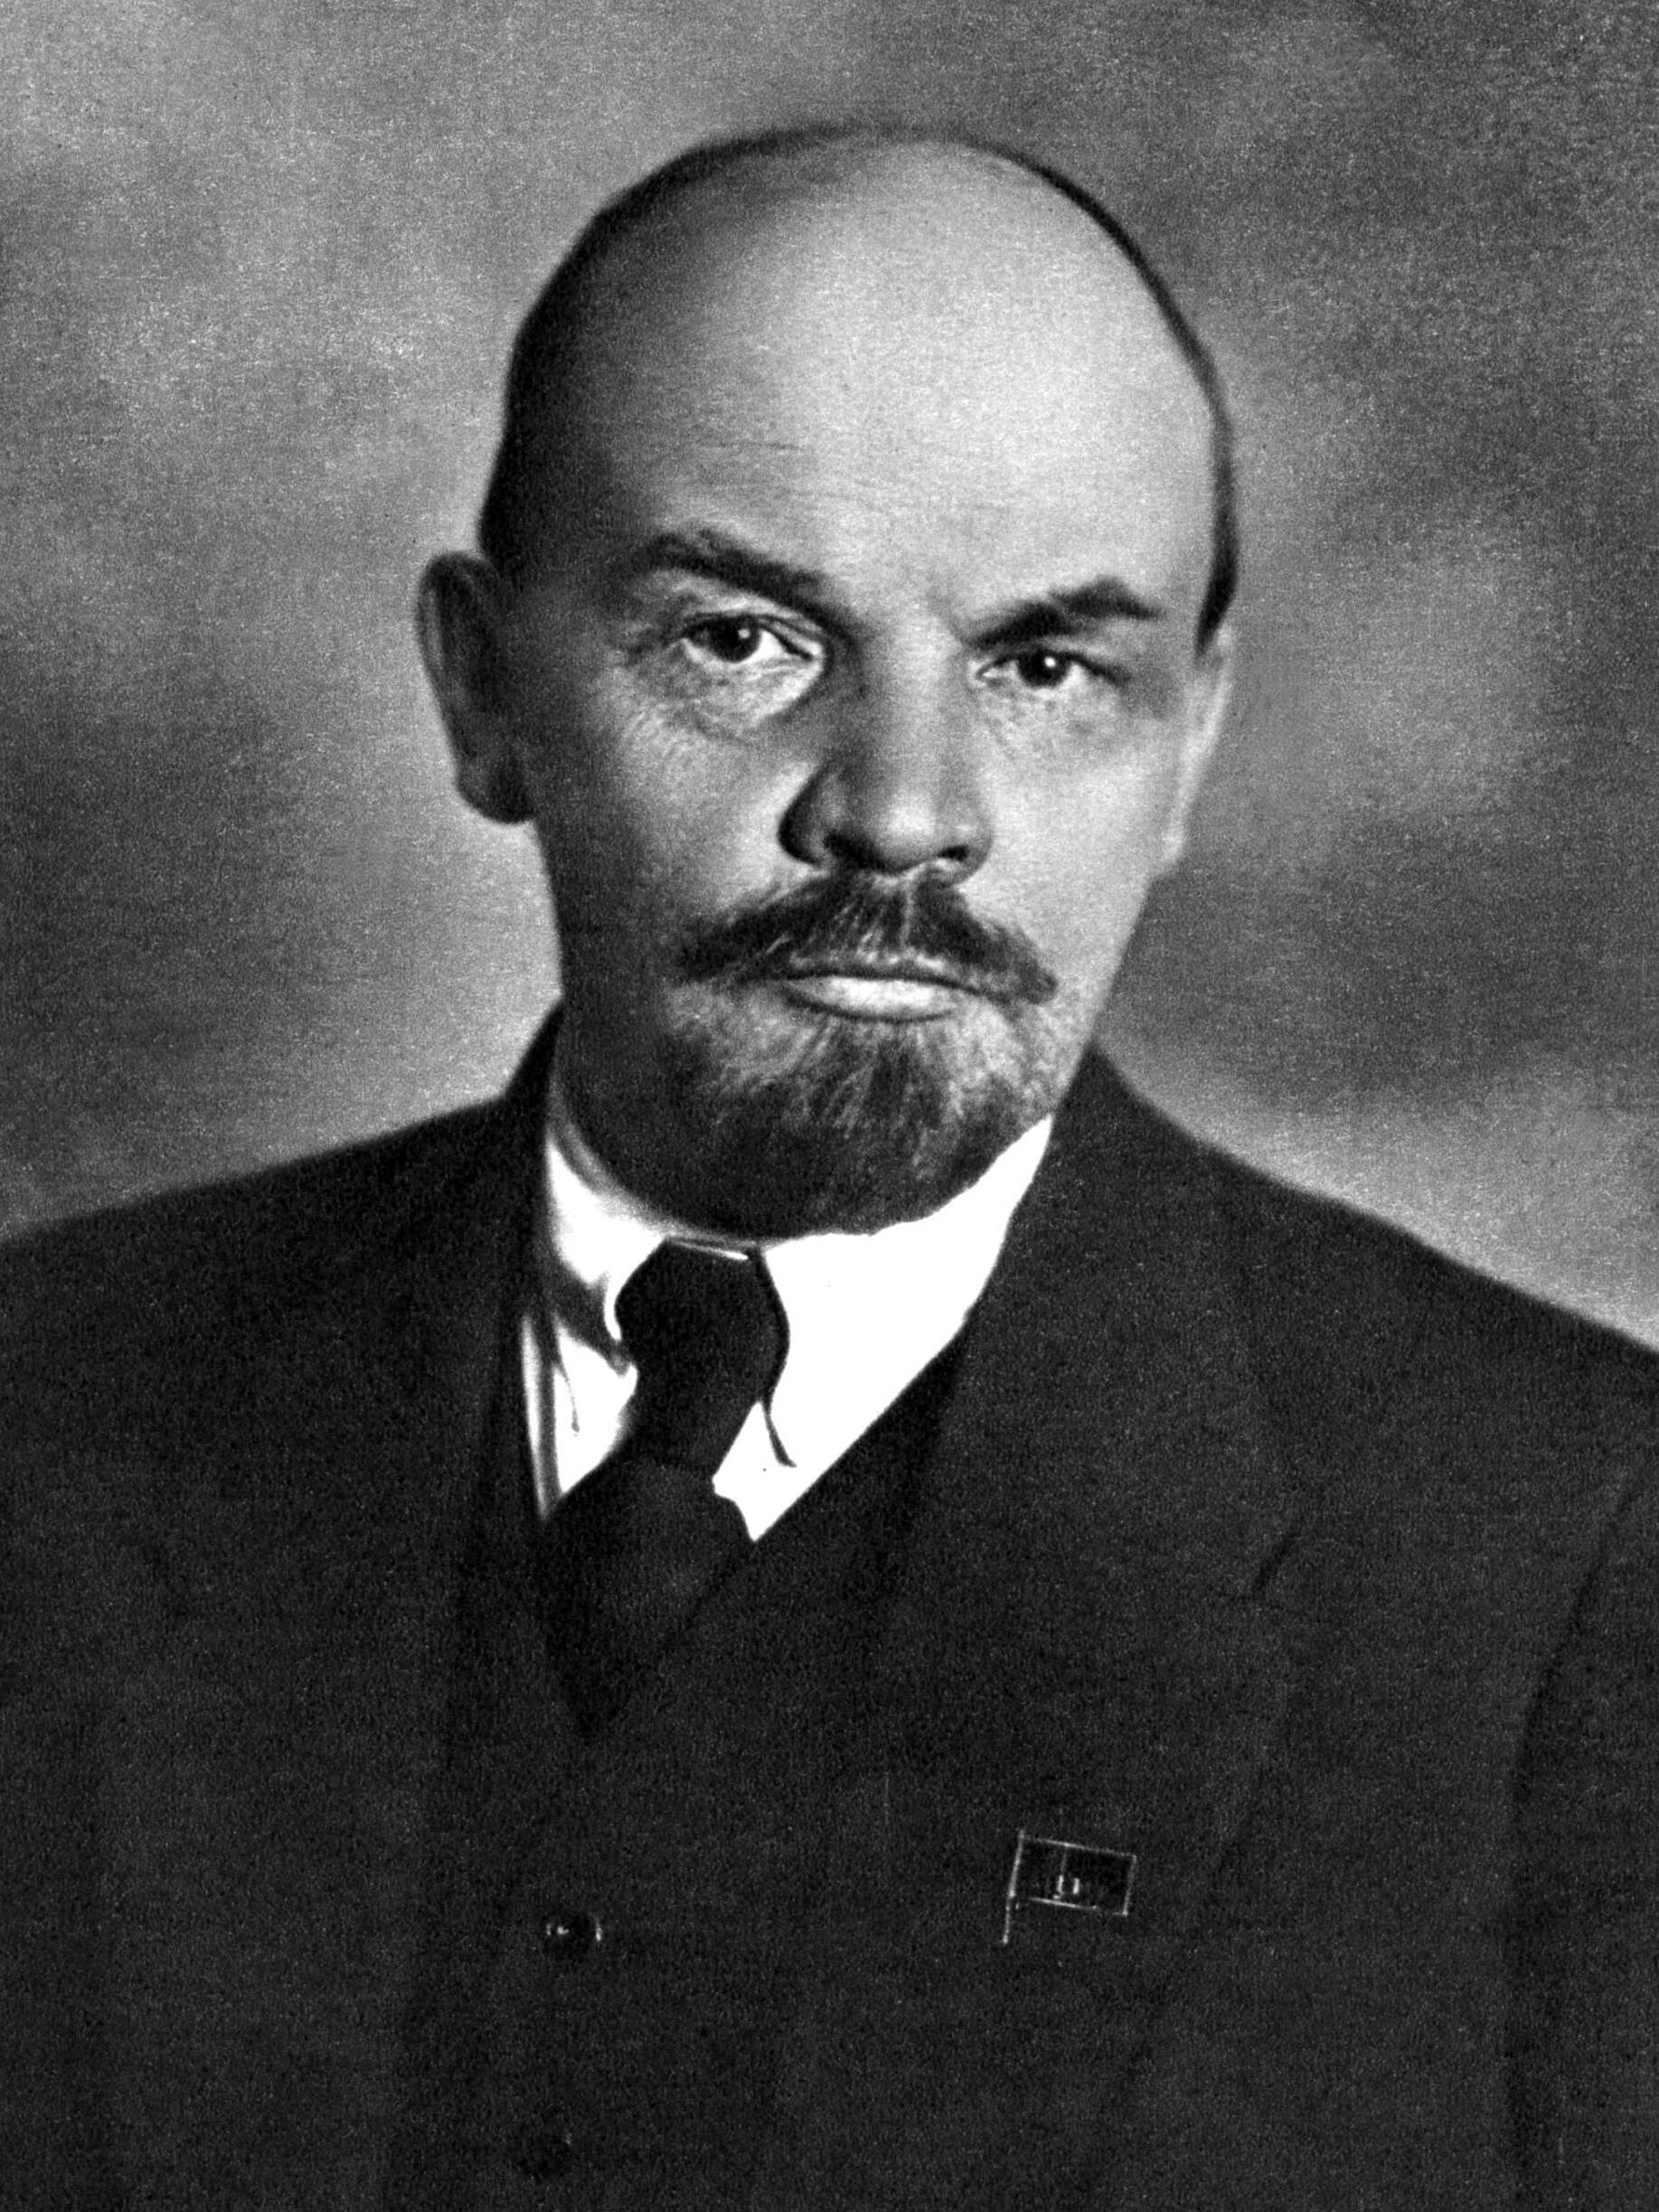 Russian Revolution - Wikipedia